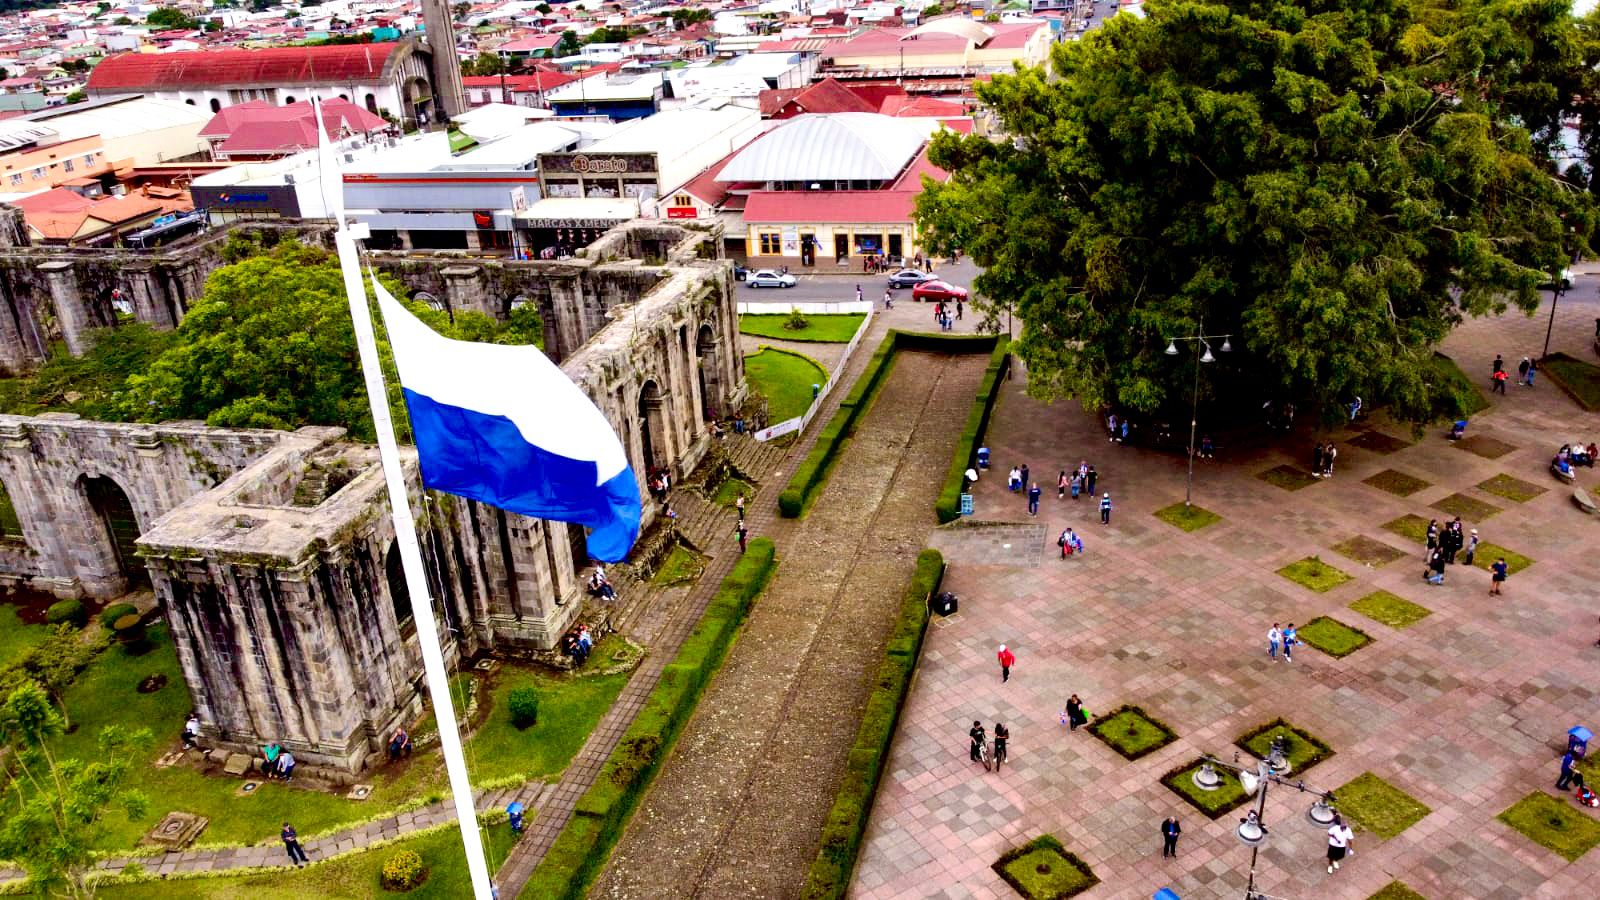 Bandera del Cartaginés de 9 metros ondeará en la Plaza Mayor | Repretel